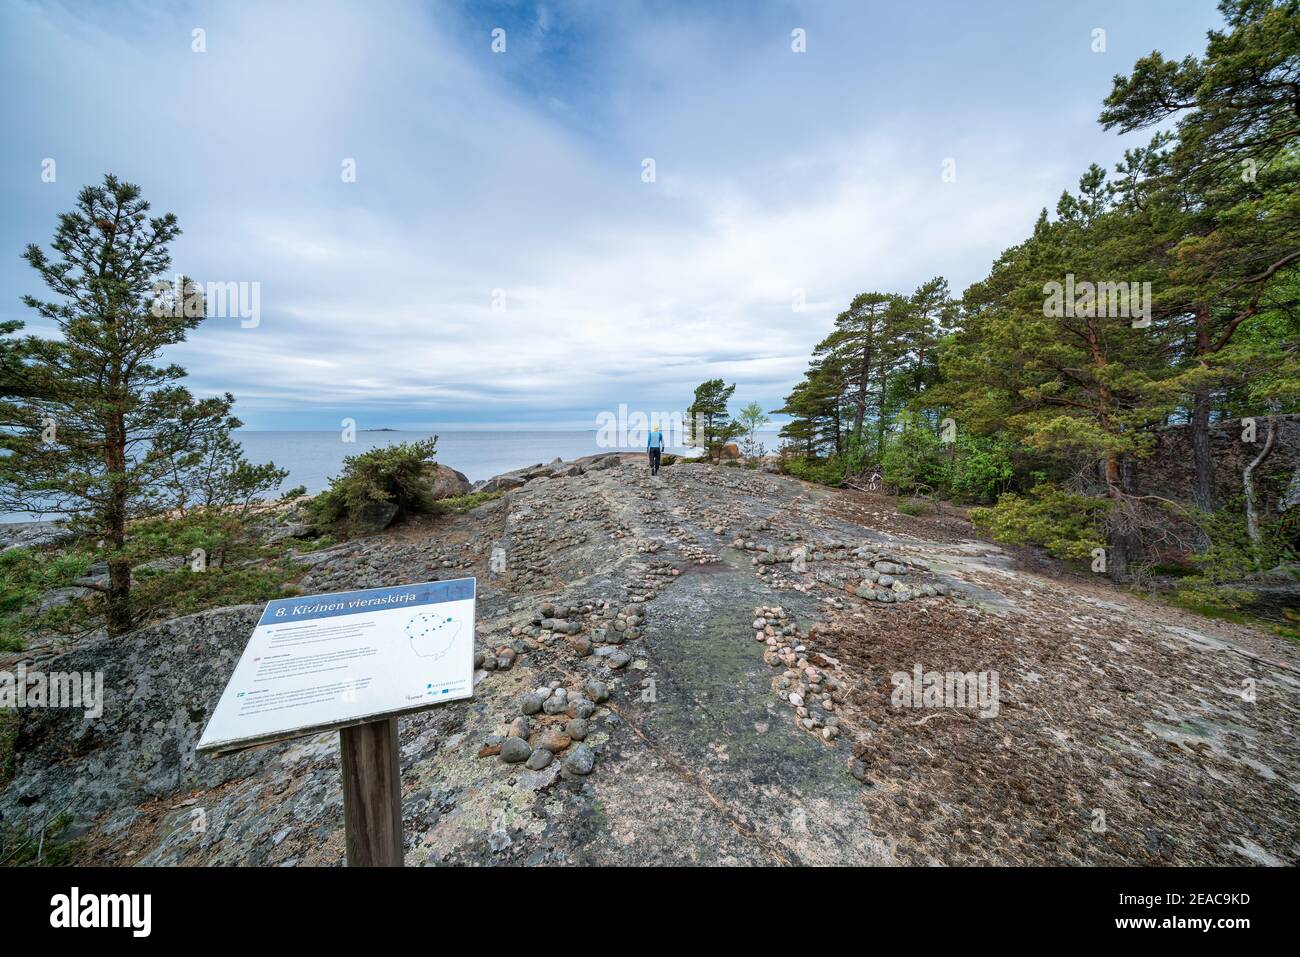 On a nature trail at Mustaviiri island, Pyhtää, Finland Stock Photo